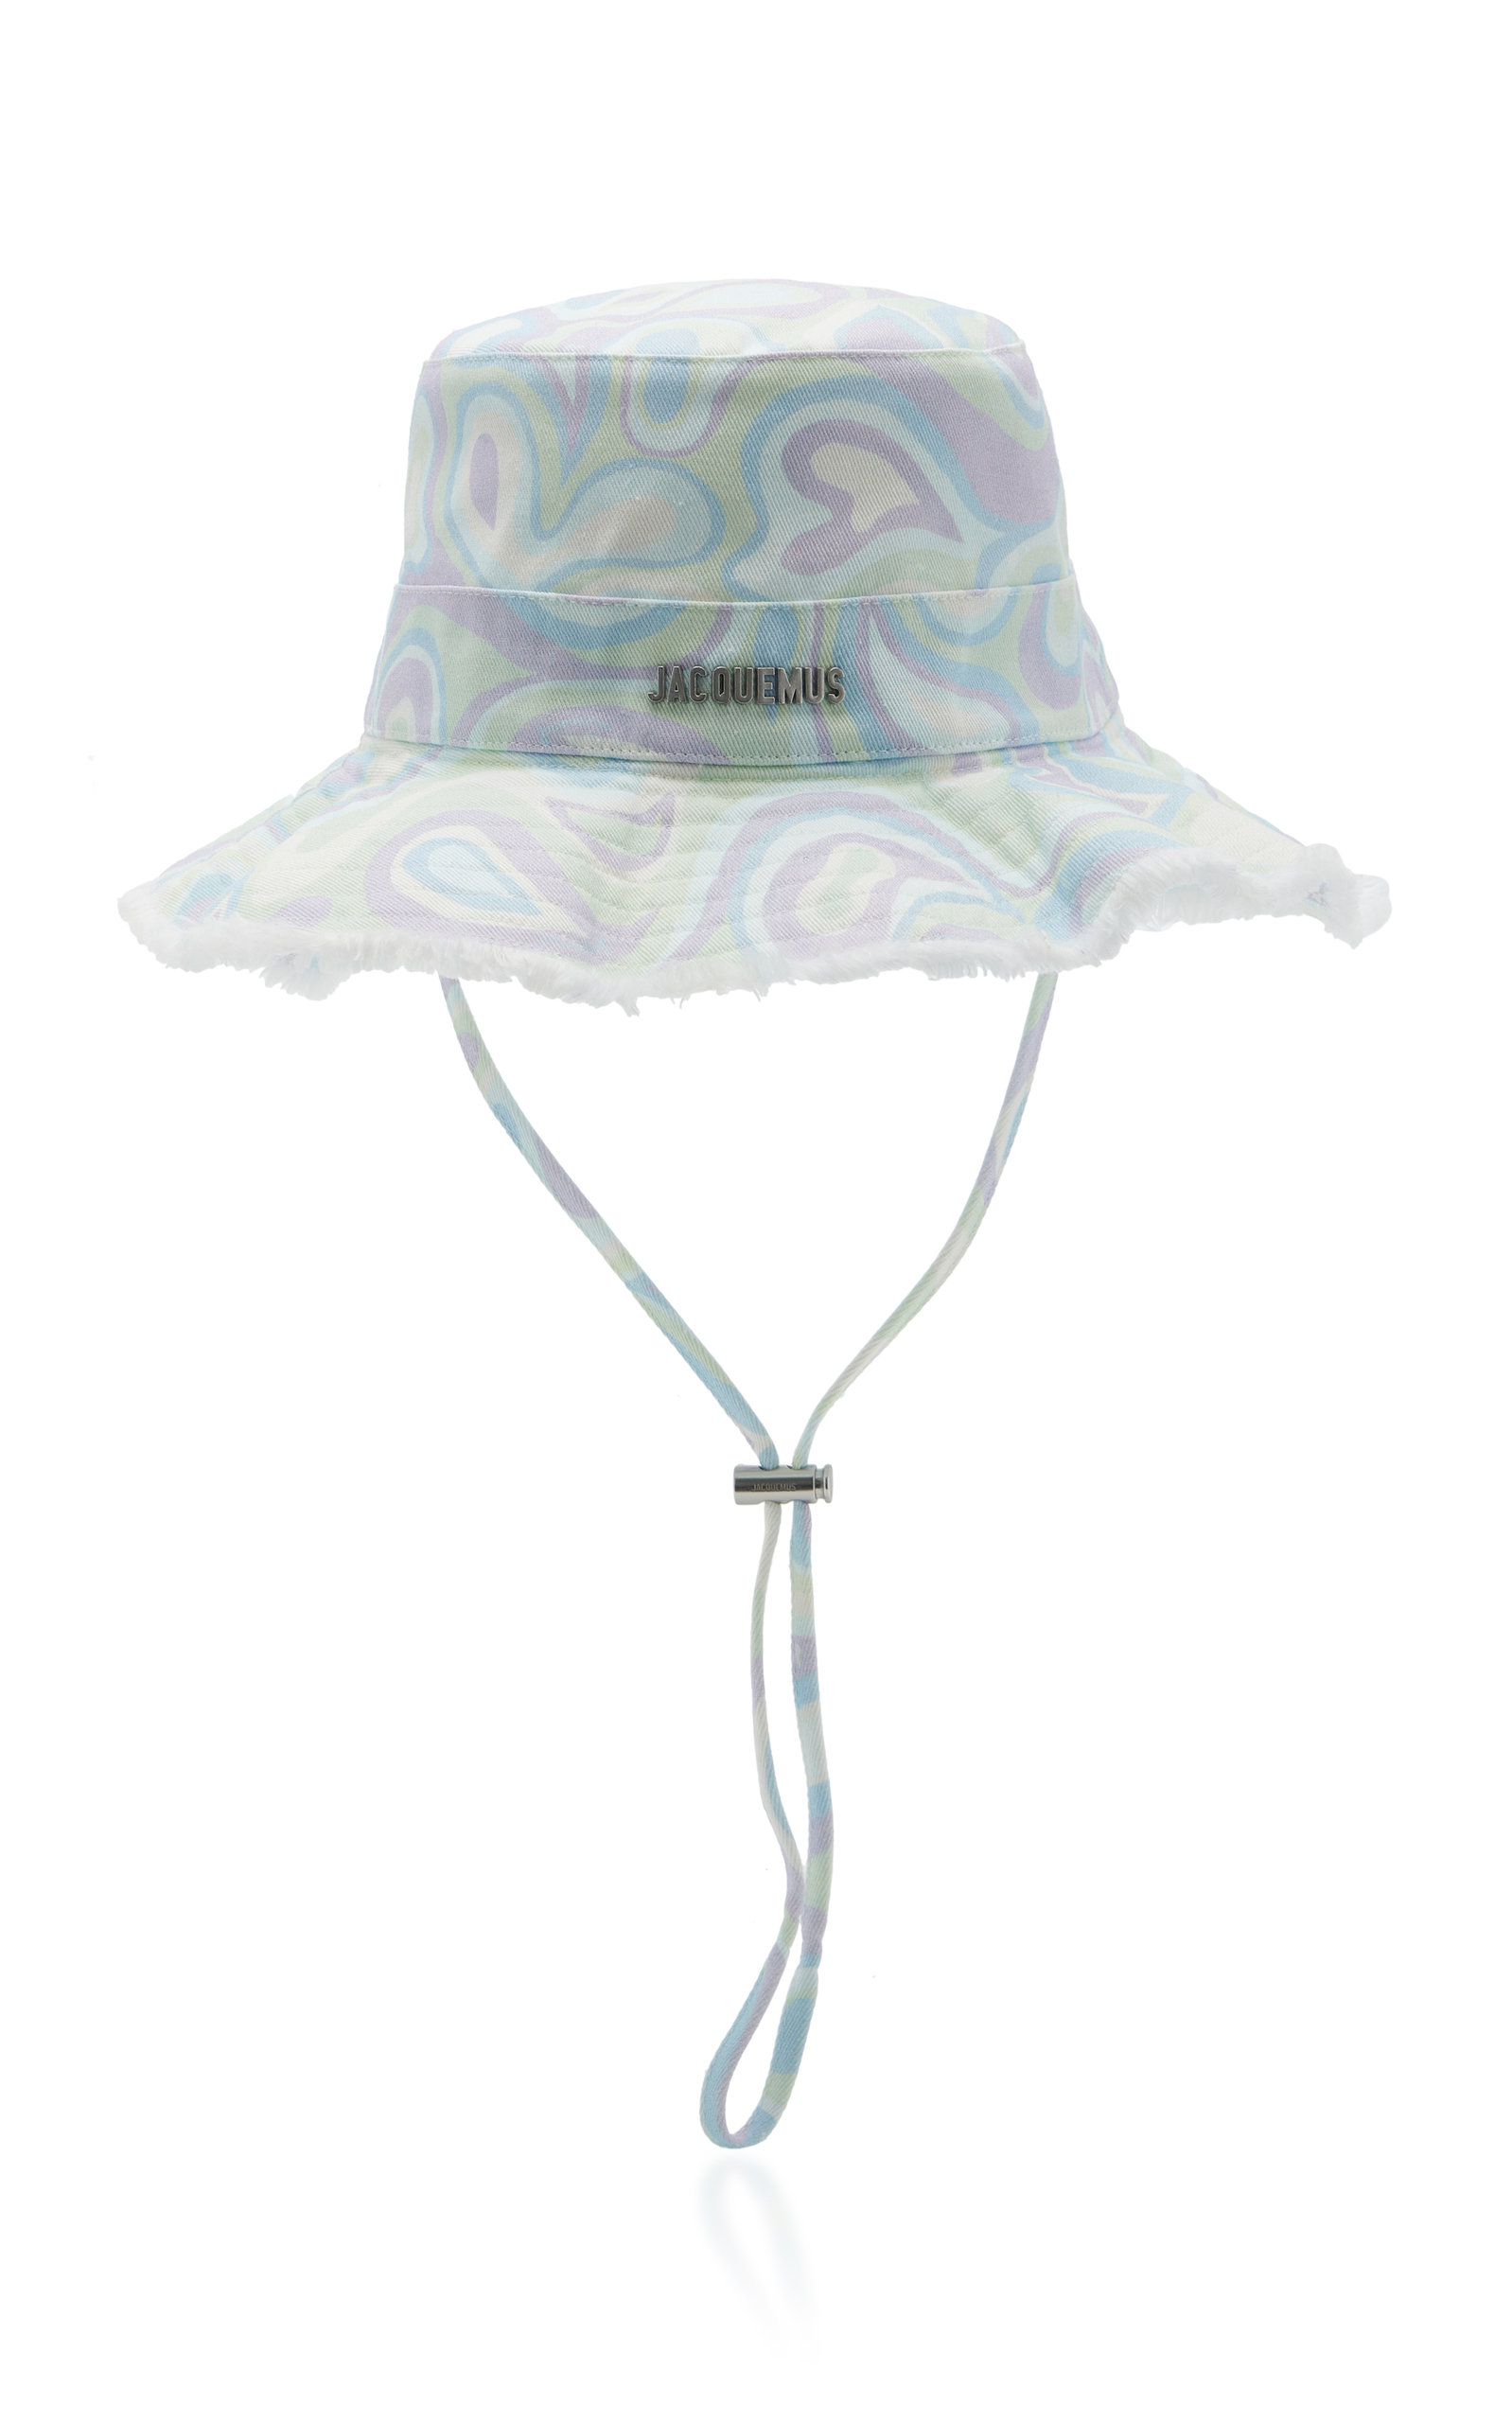 Jacquemus - Women's Le Bob Artichaut Printed Cotton Bucket Hat - Multi - Moda Operandi